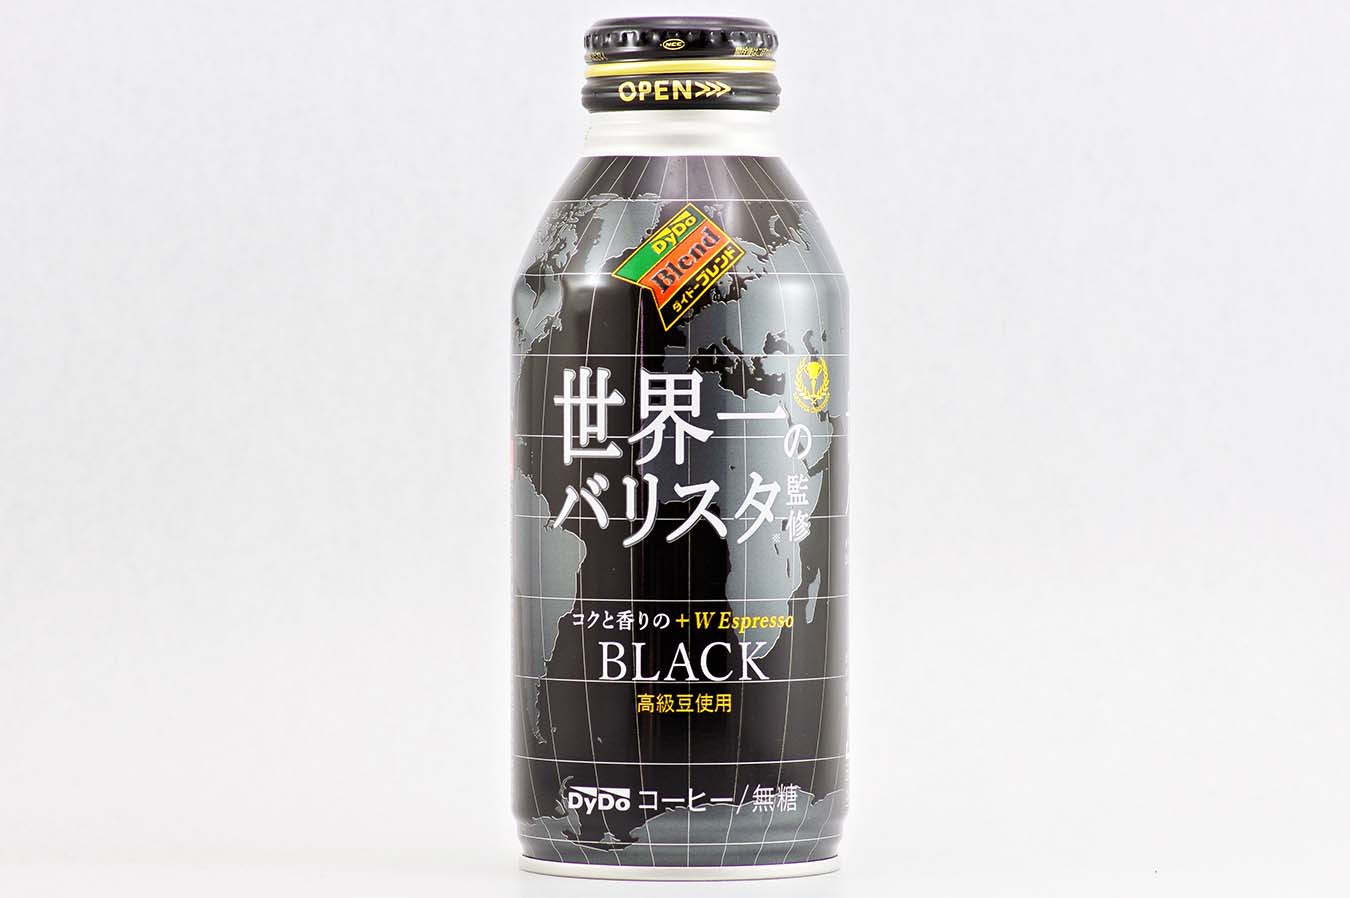 ダイドーブレンド BLACK 世界一のバリスタ監修 400gボトル缶 2015年4月